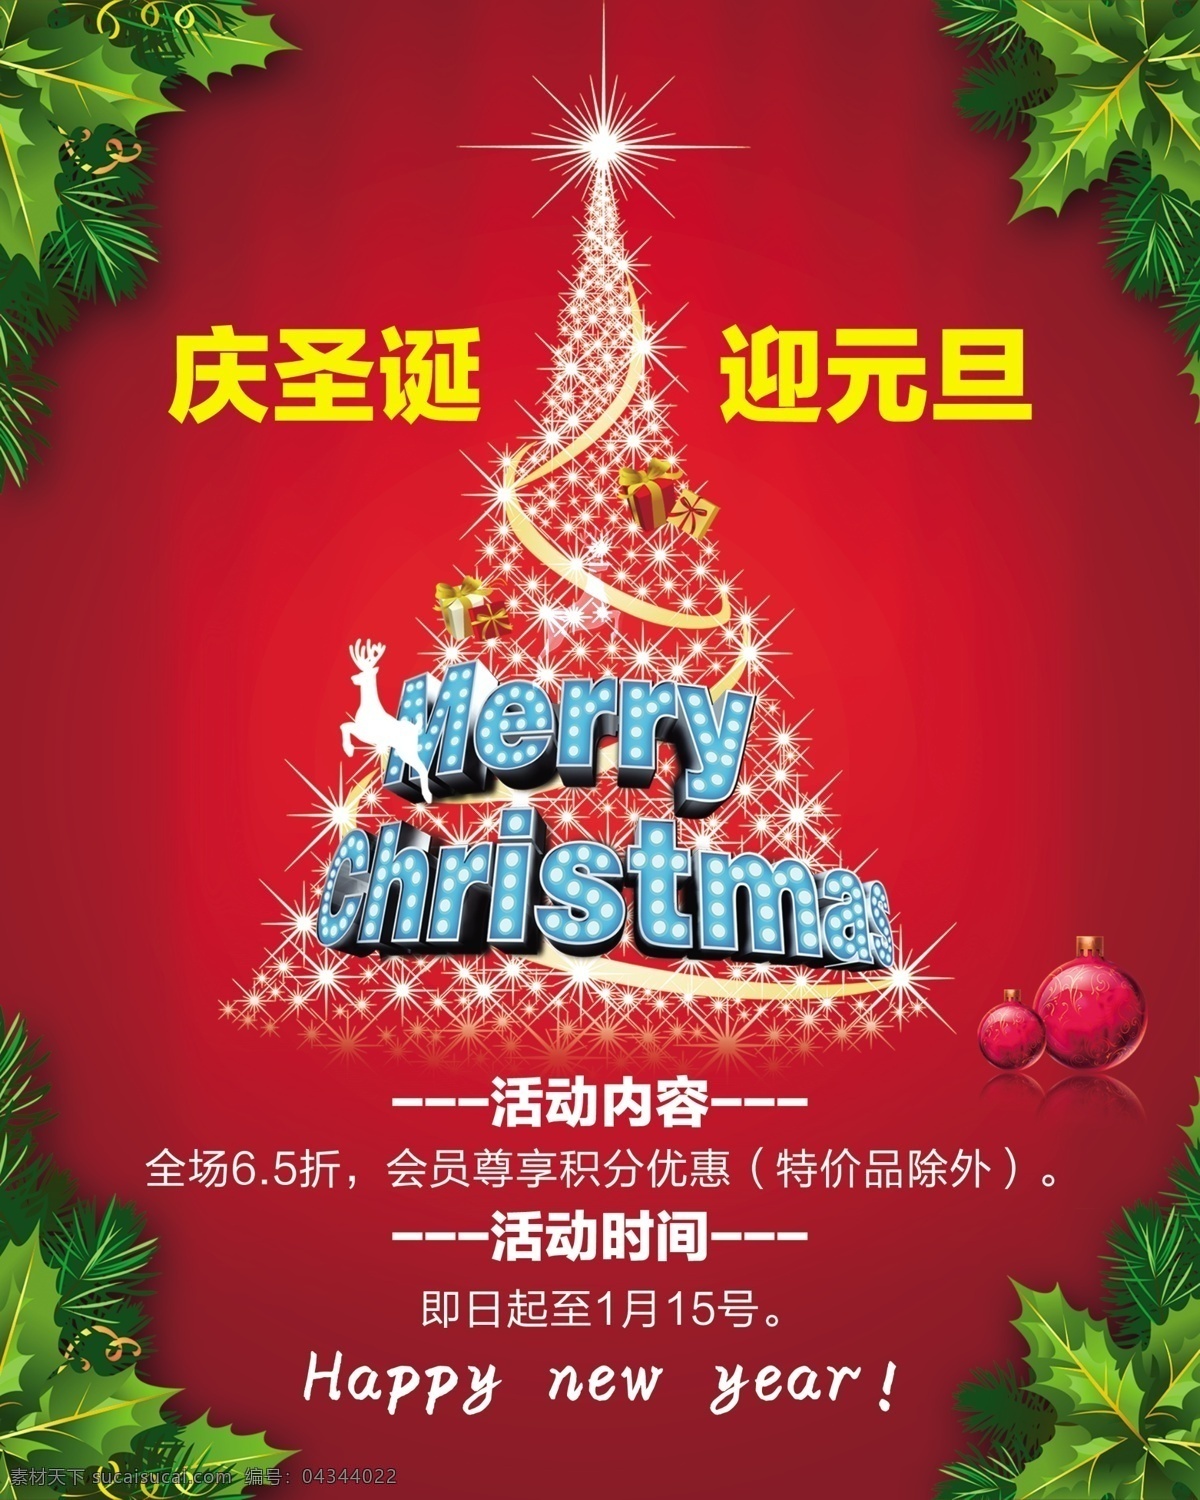 圣诞 活动 海报 广告设计模板 红色 圣诞活动海报 模板下载 元旦 源文件 其他海报设计